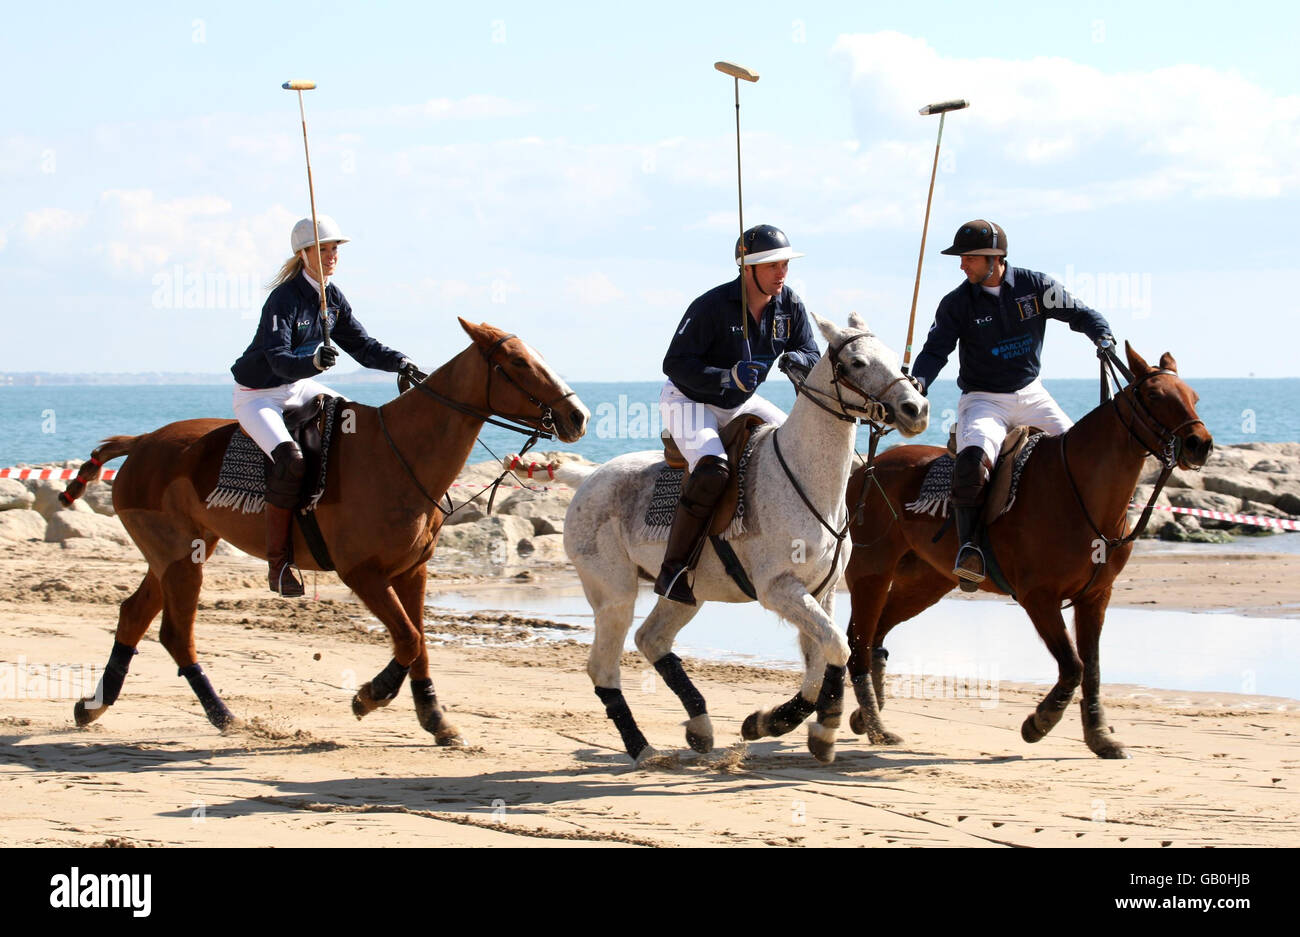 Foto non pubblicata in precedenza di giocatori di polo che si riscaldano sulla spiaggia di Sandbanks, Dorset all'evento di lancio del primo torneo di sandpolo europeo all'inizio di quest'anno. Foto Stock